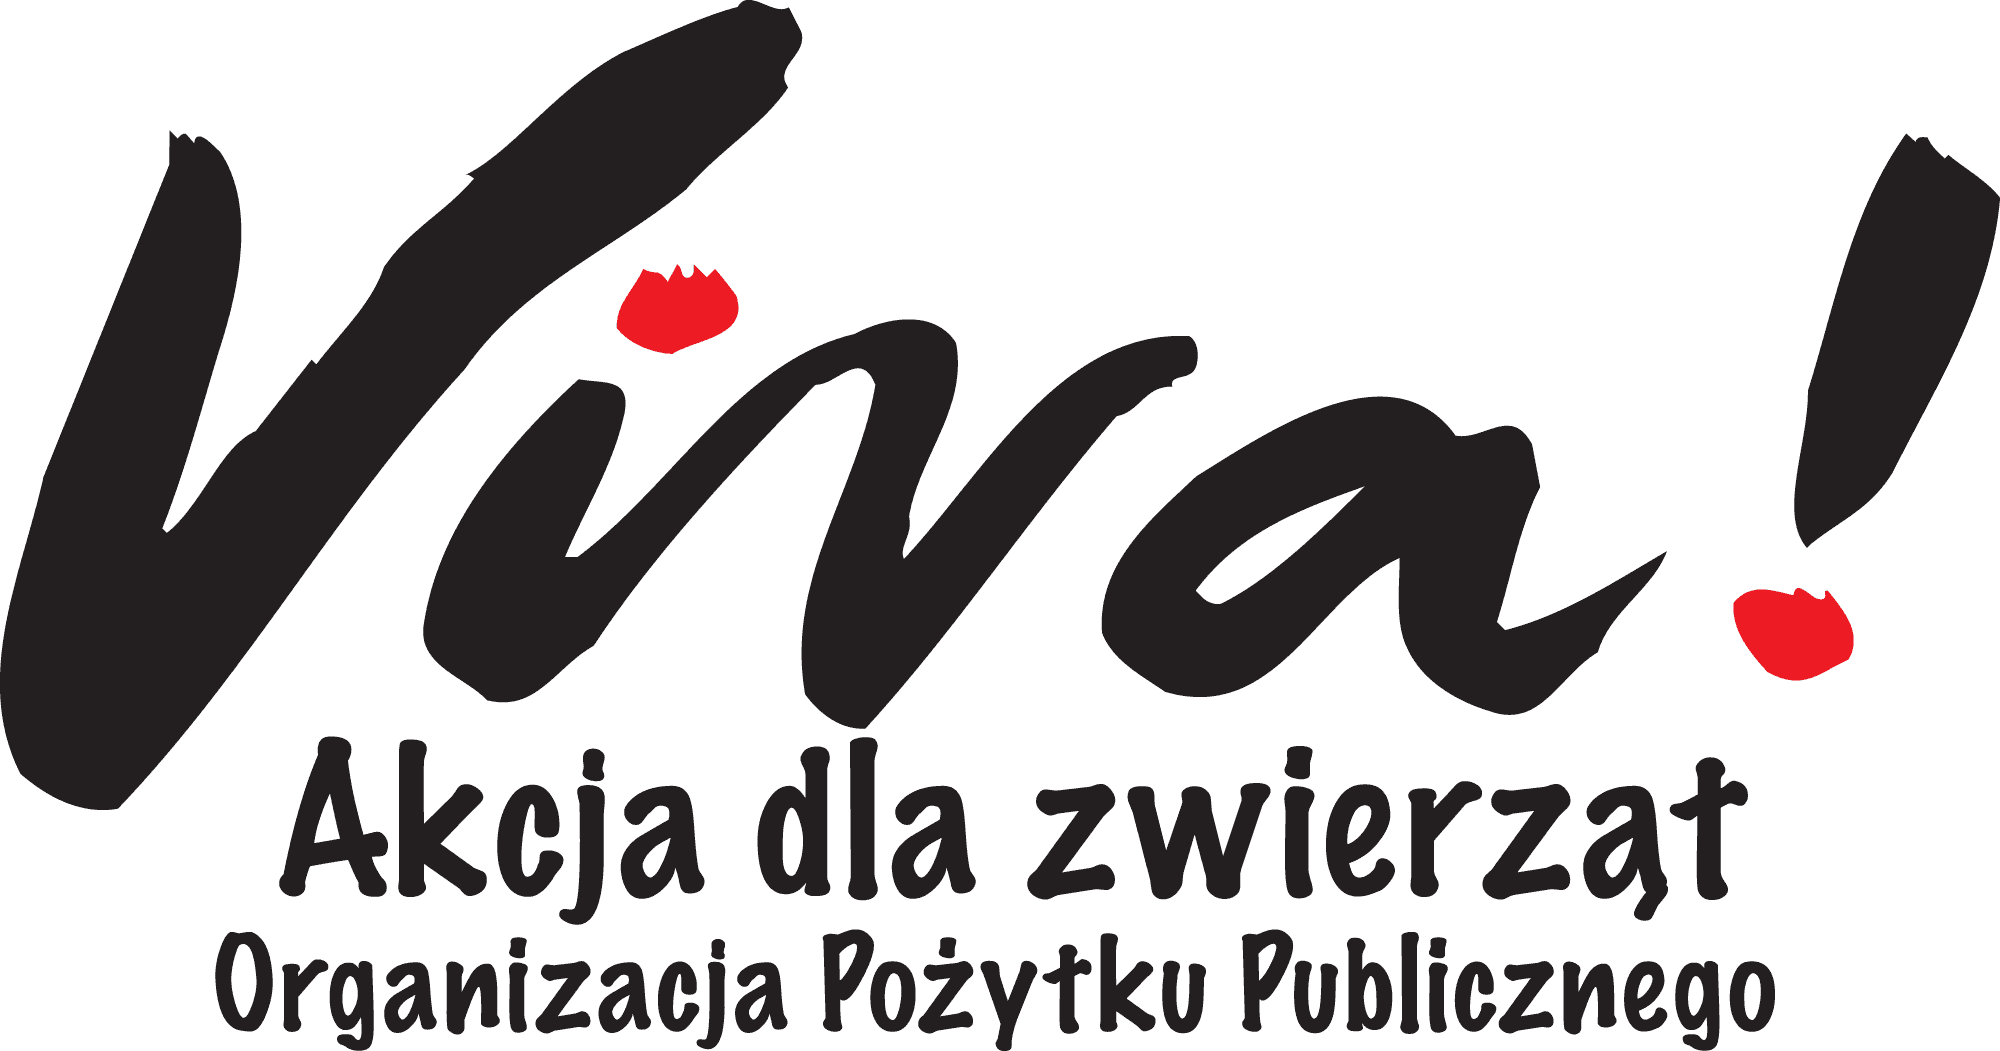 Viva! Akcja dla zwierząt - Łódź